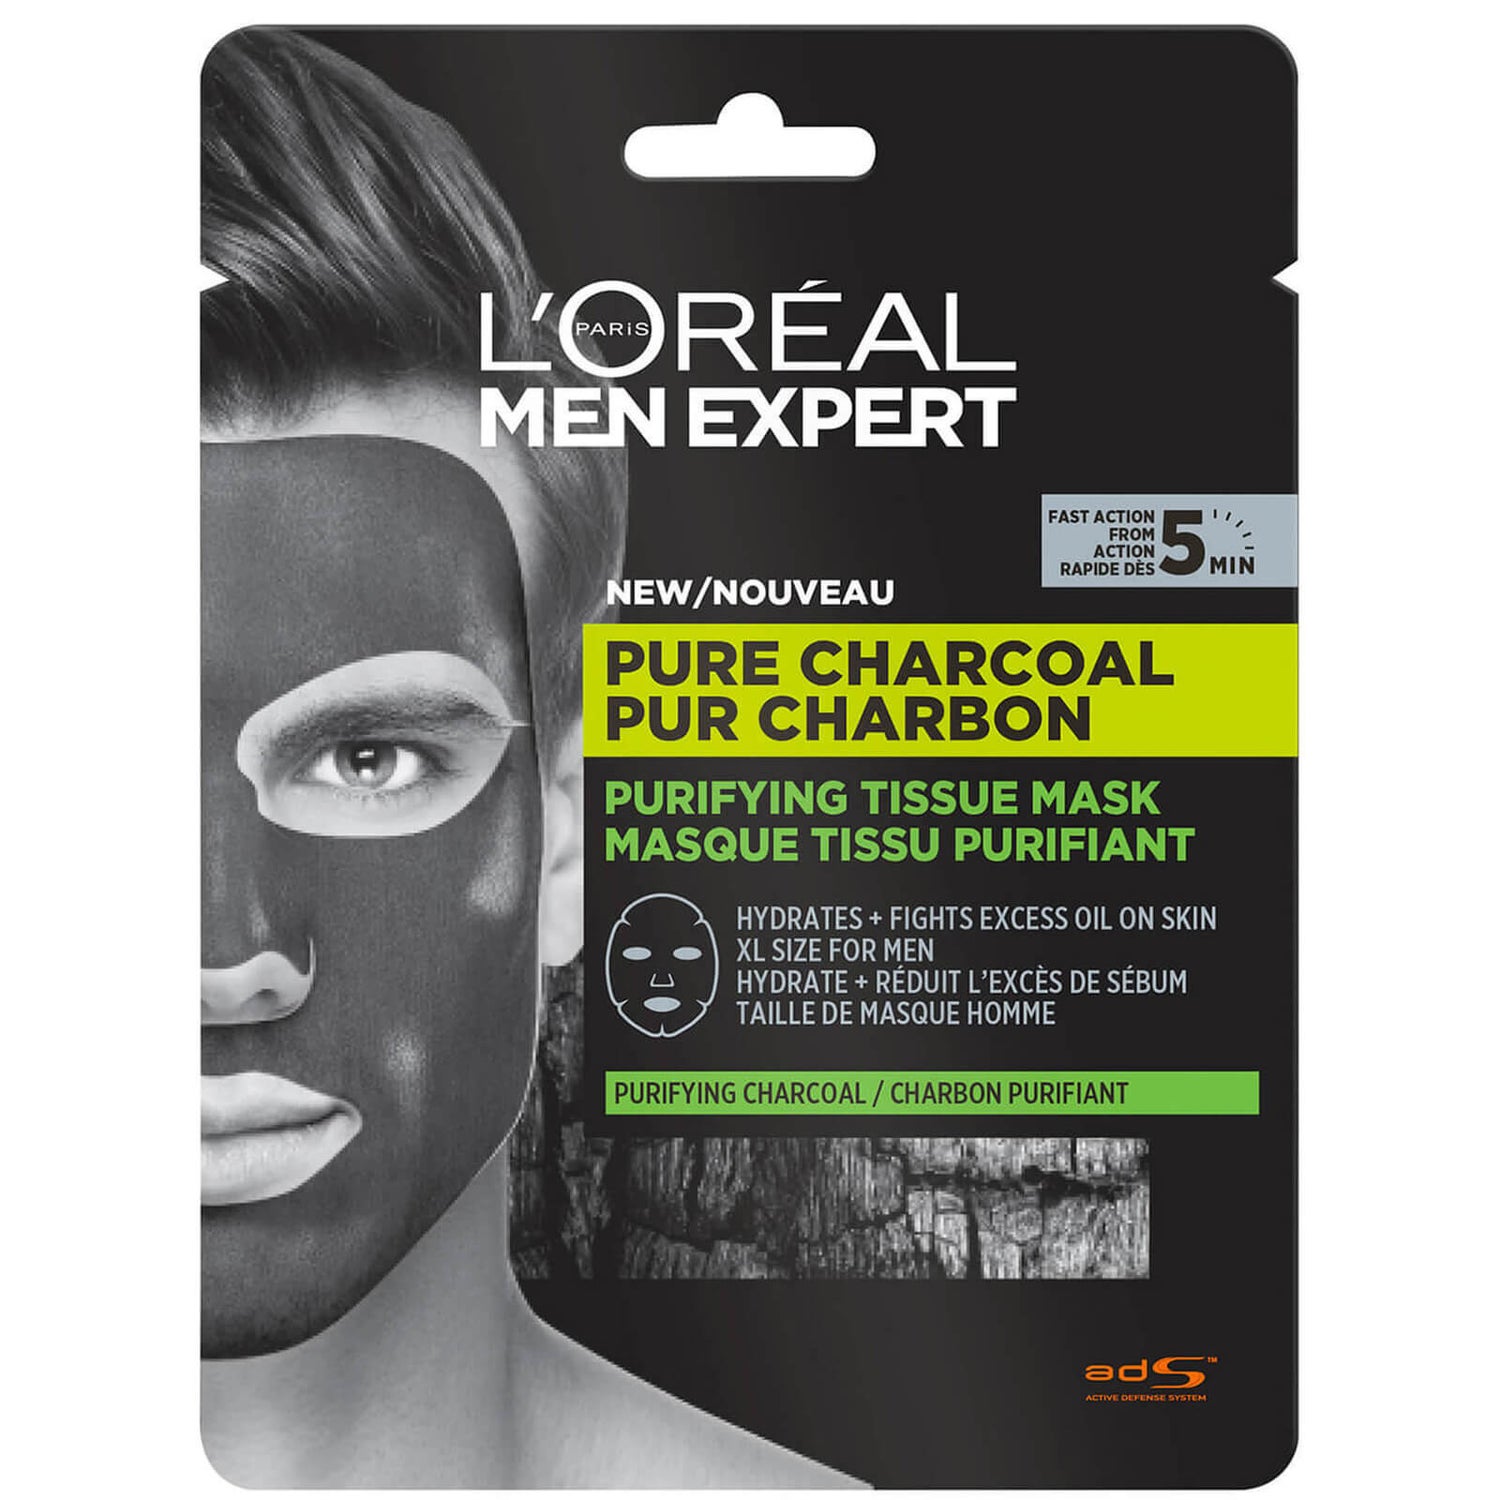 Очищающие маски с углем. Тканевая маска для лица для мужчин l'Oreal men. Маска лореаль тканевая. Лореаль тканевые маски для лица. Маска лореаль для лица черная.